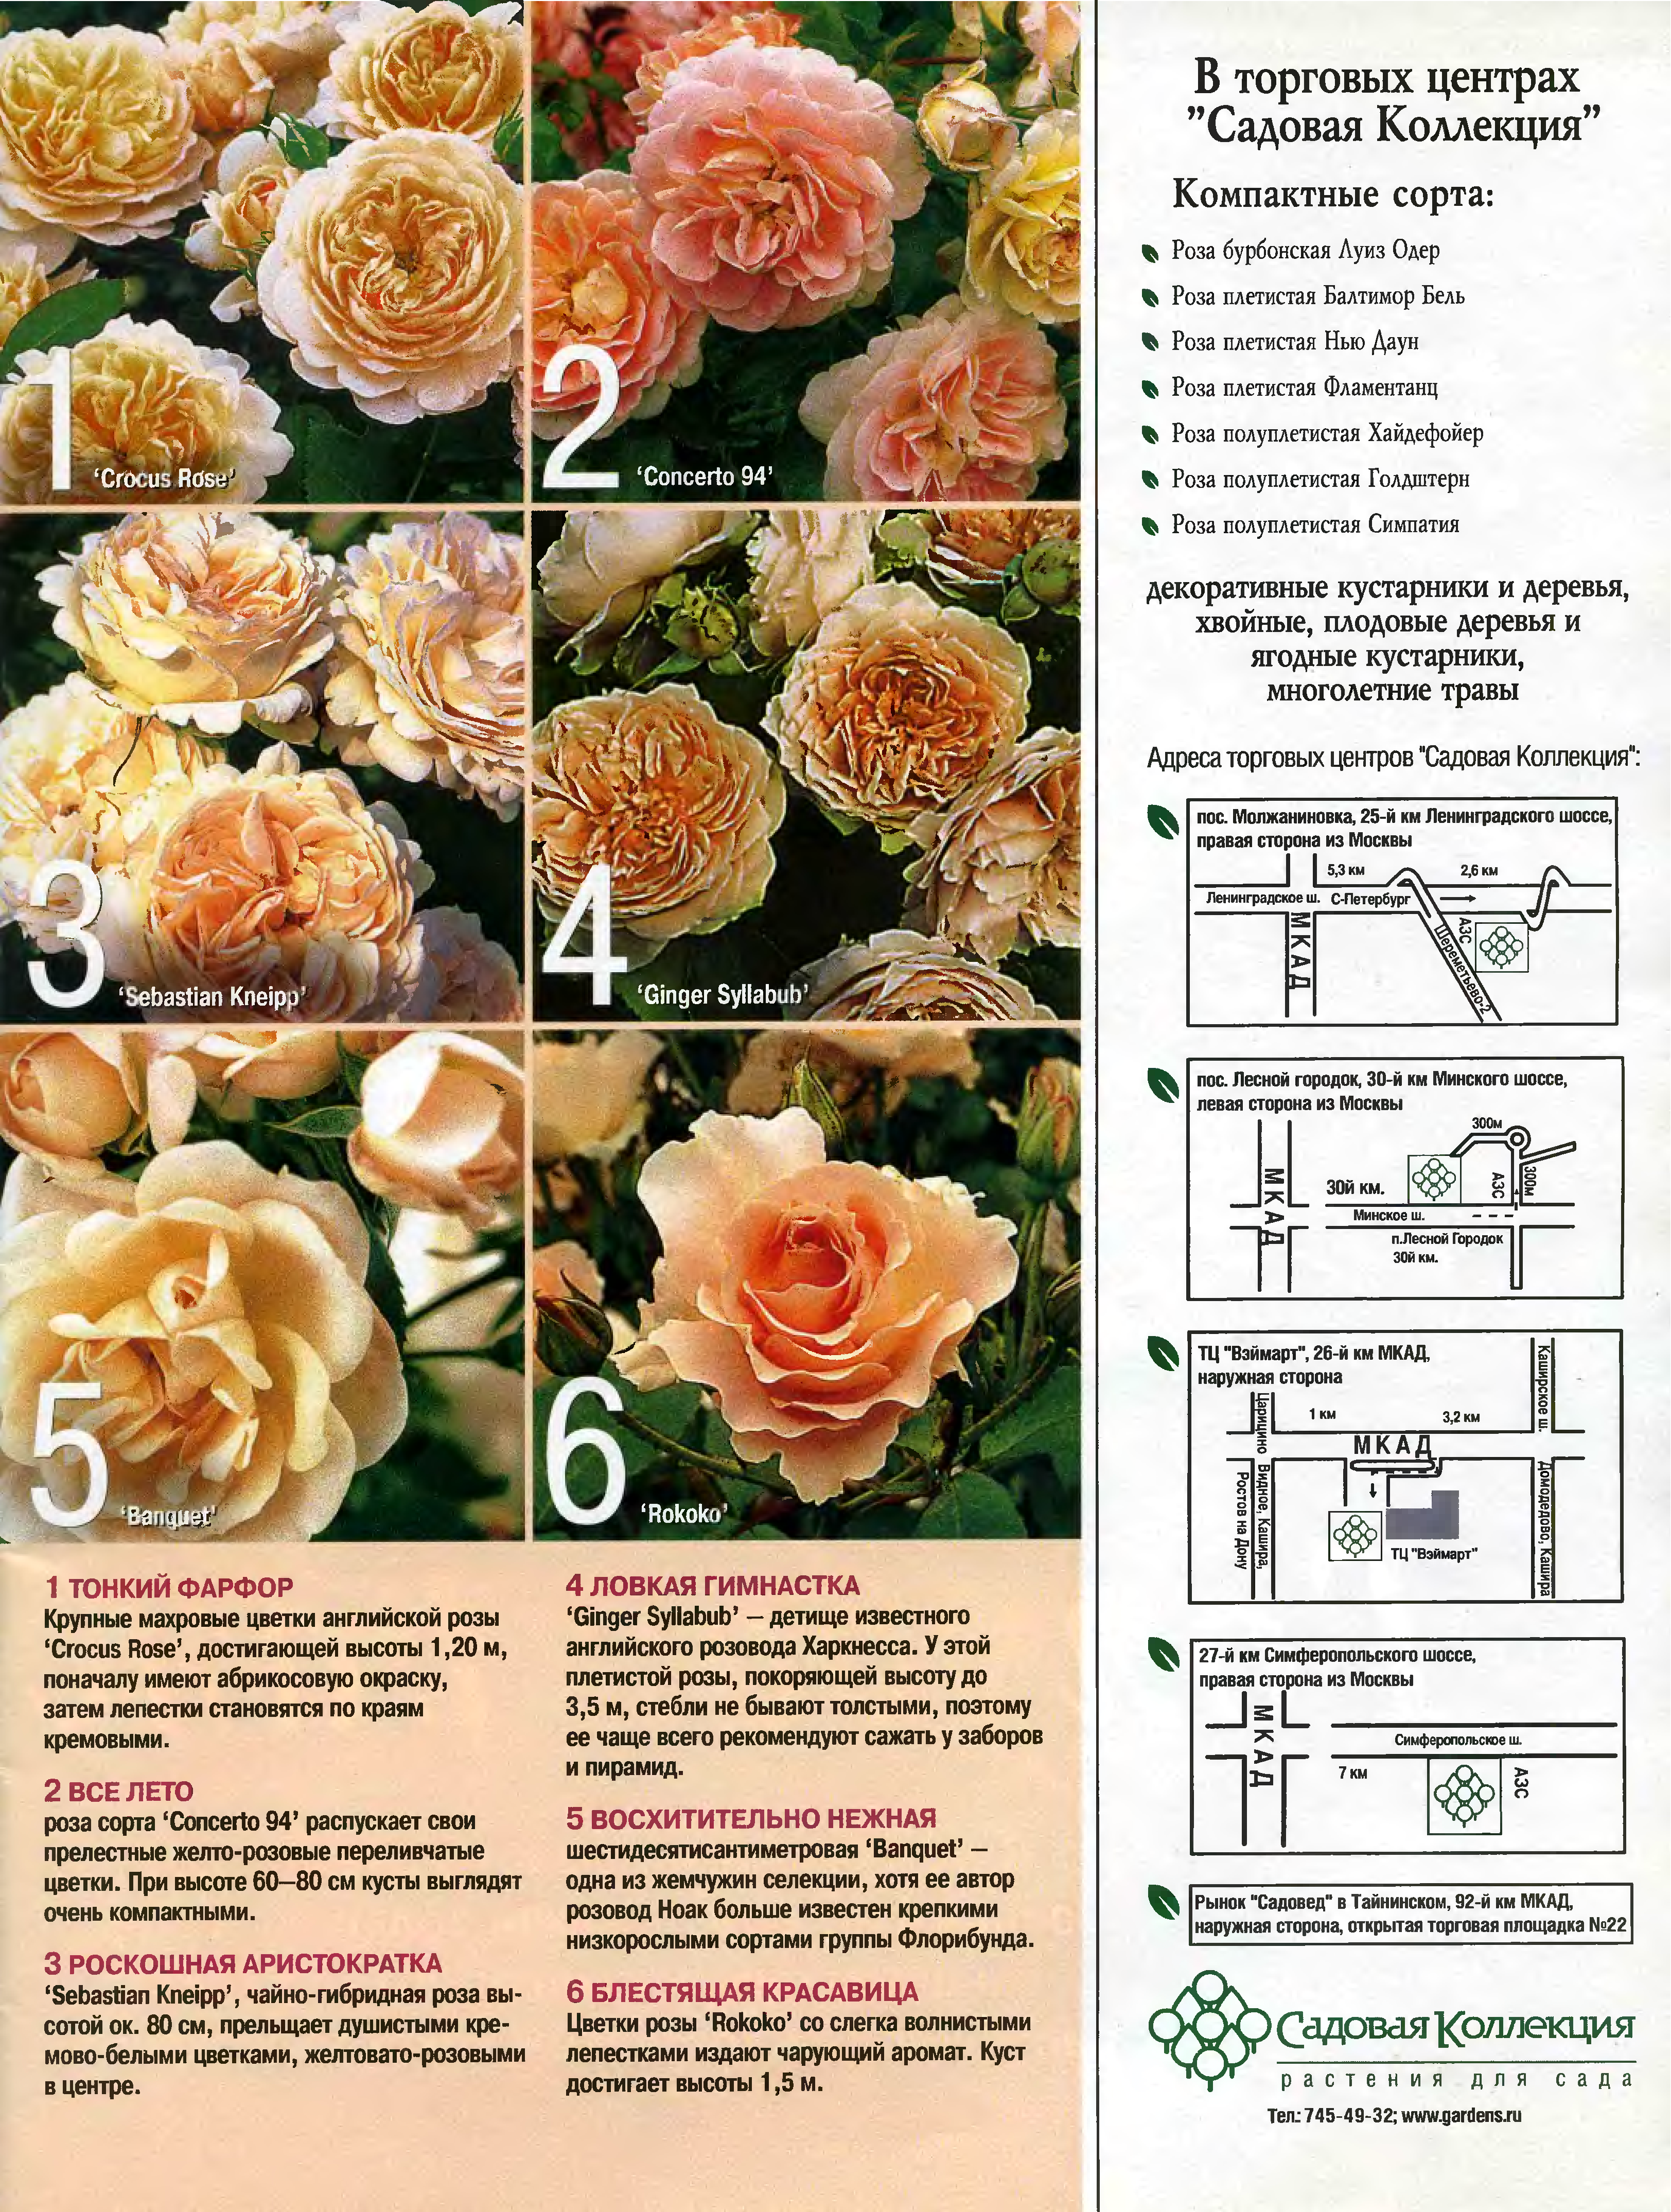 Роза флорибунда что это такое и как выращивать пышные кусты с обилием бутонов